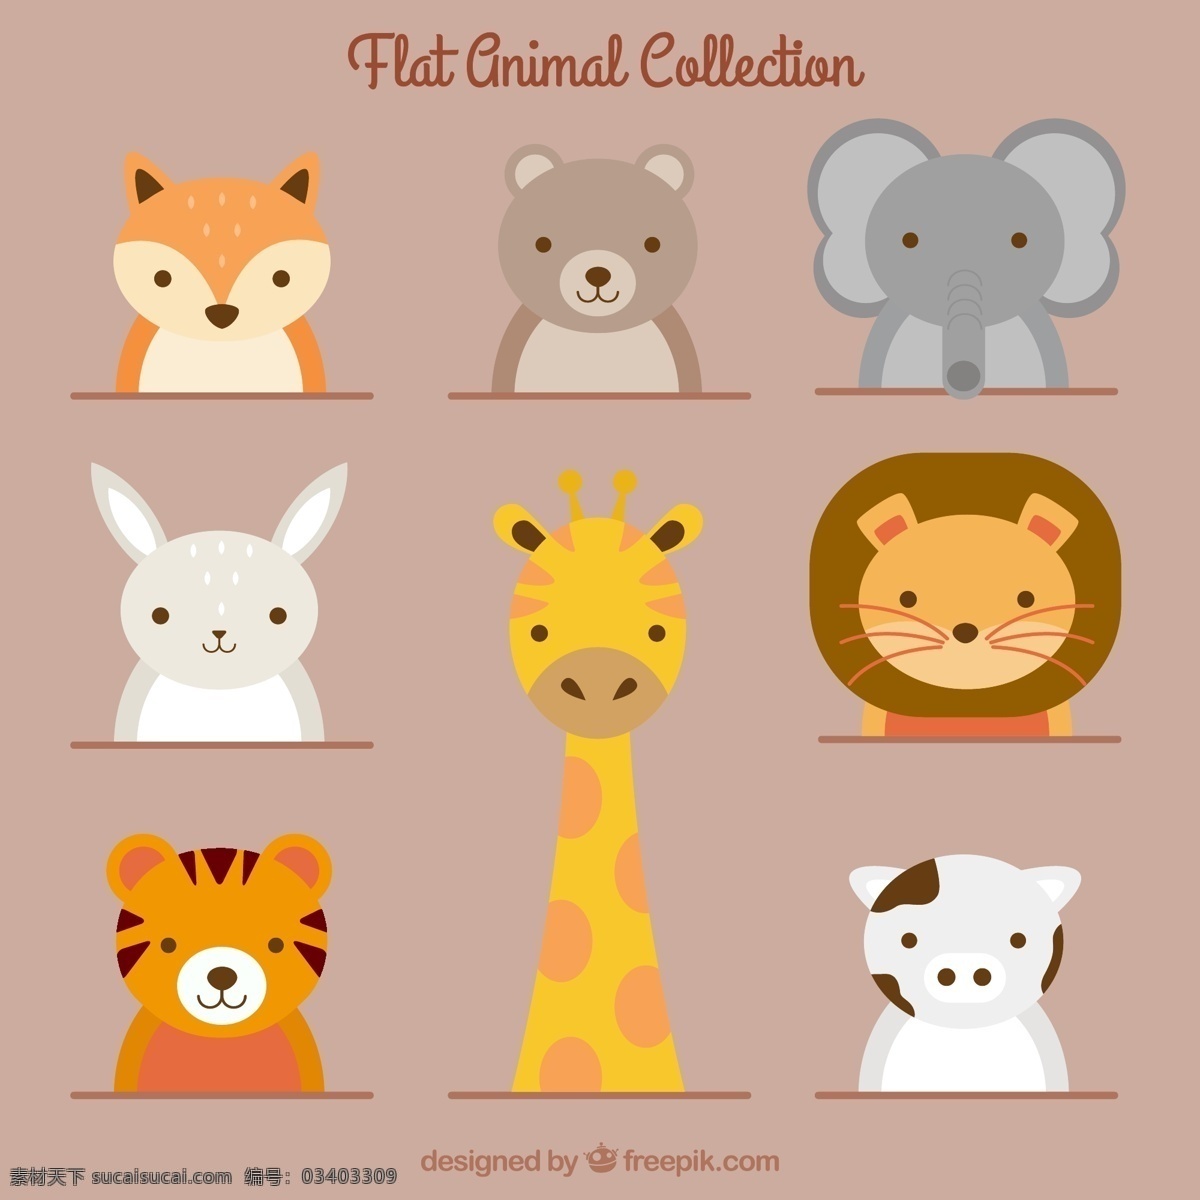 组 简约 可爱 动物 卡通 卡哇伊 矢量素材 小动物 创意设计 创意 元素 生物元素 动物元素